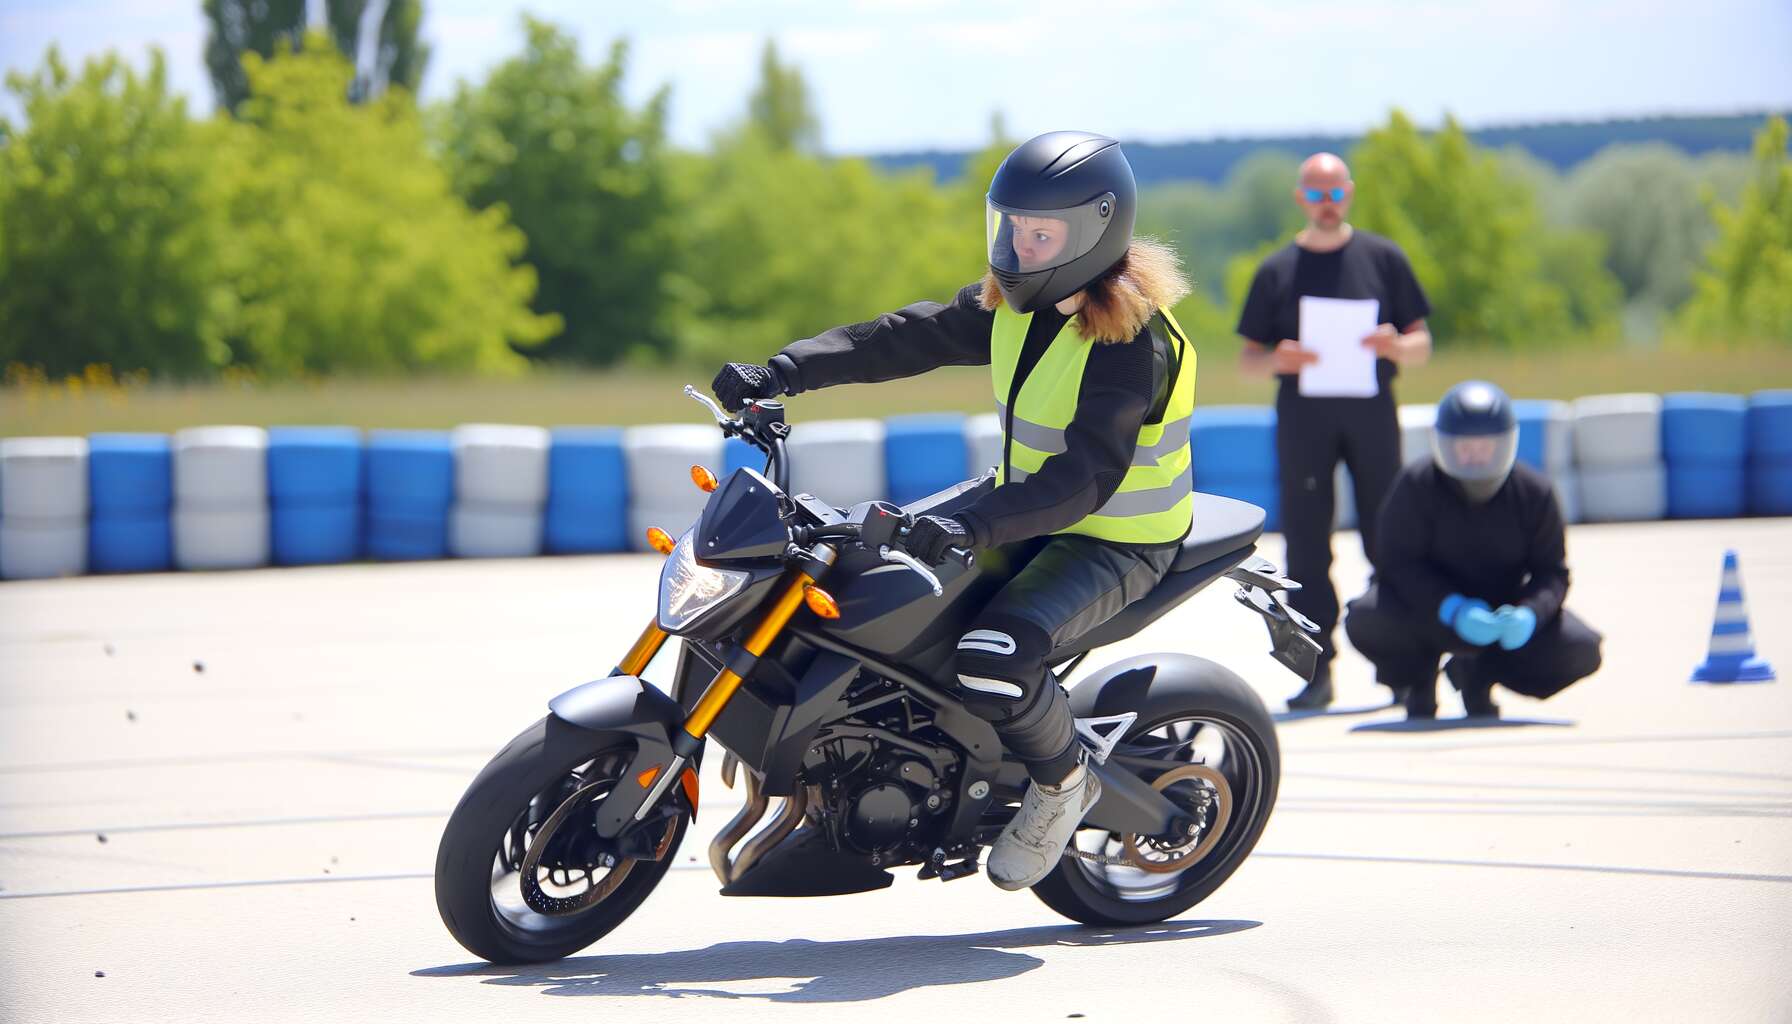 Les étapes clés de la formation accélérée au permis moto